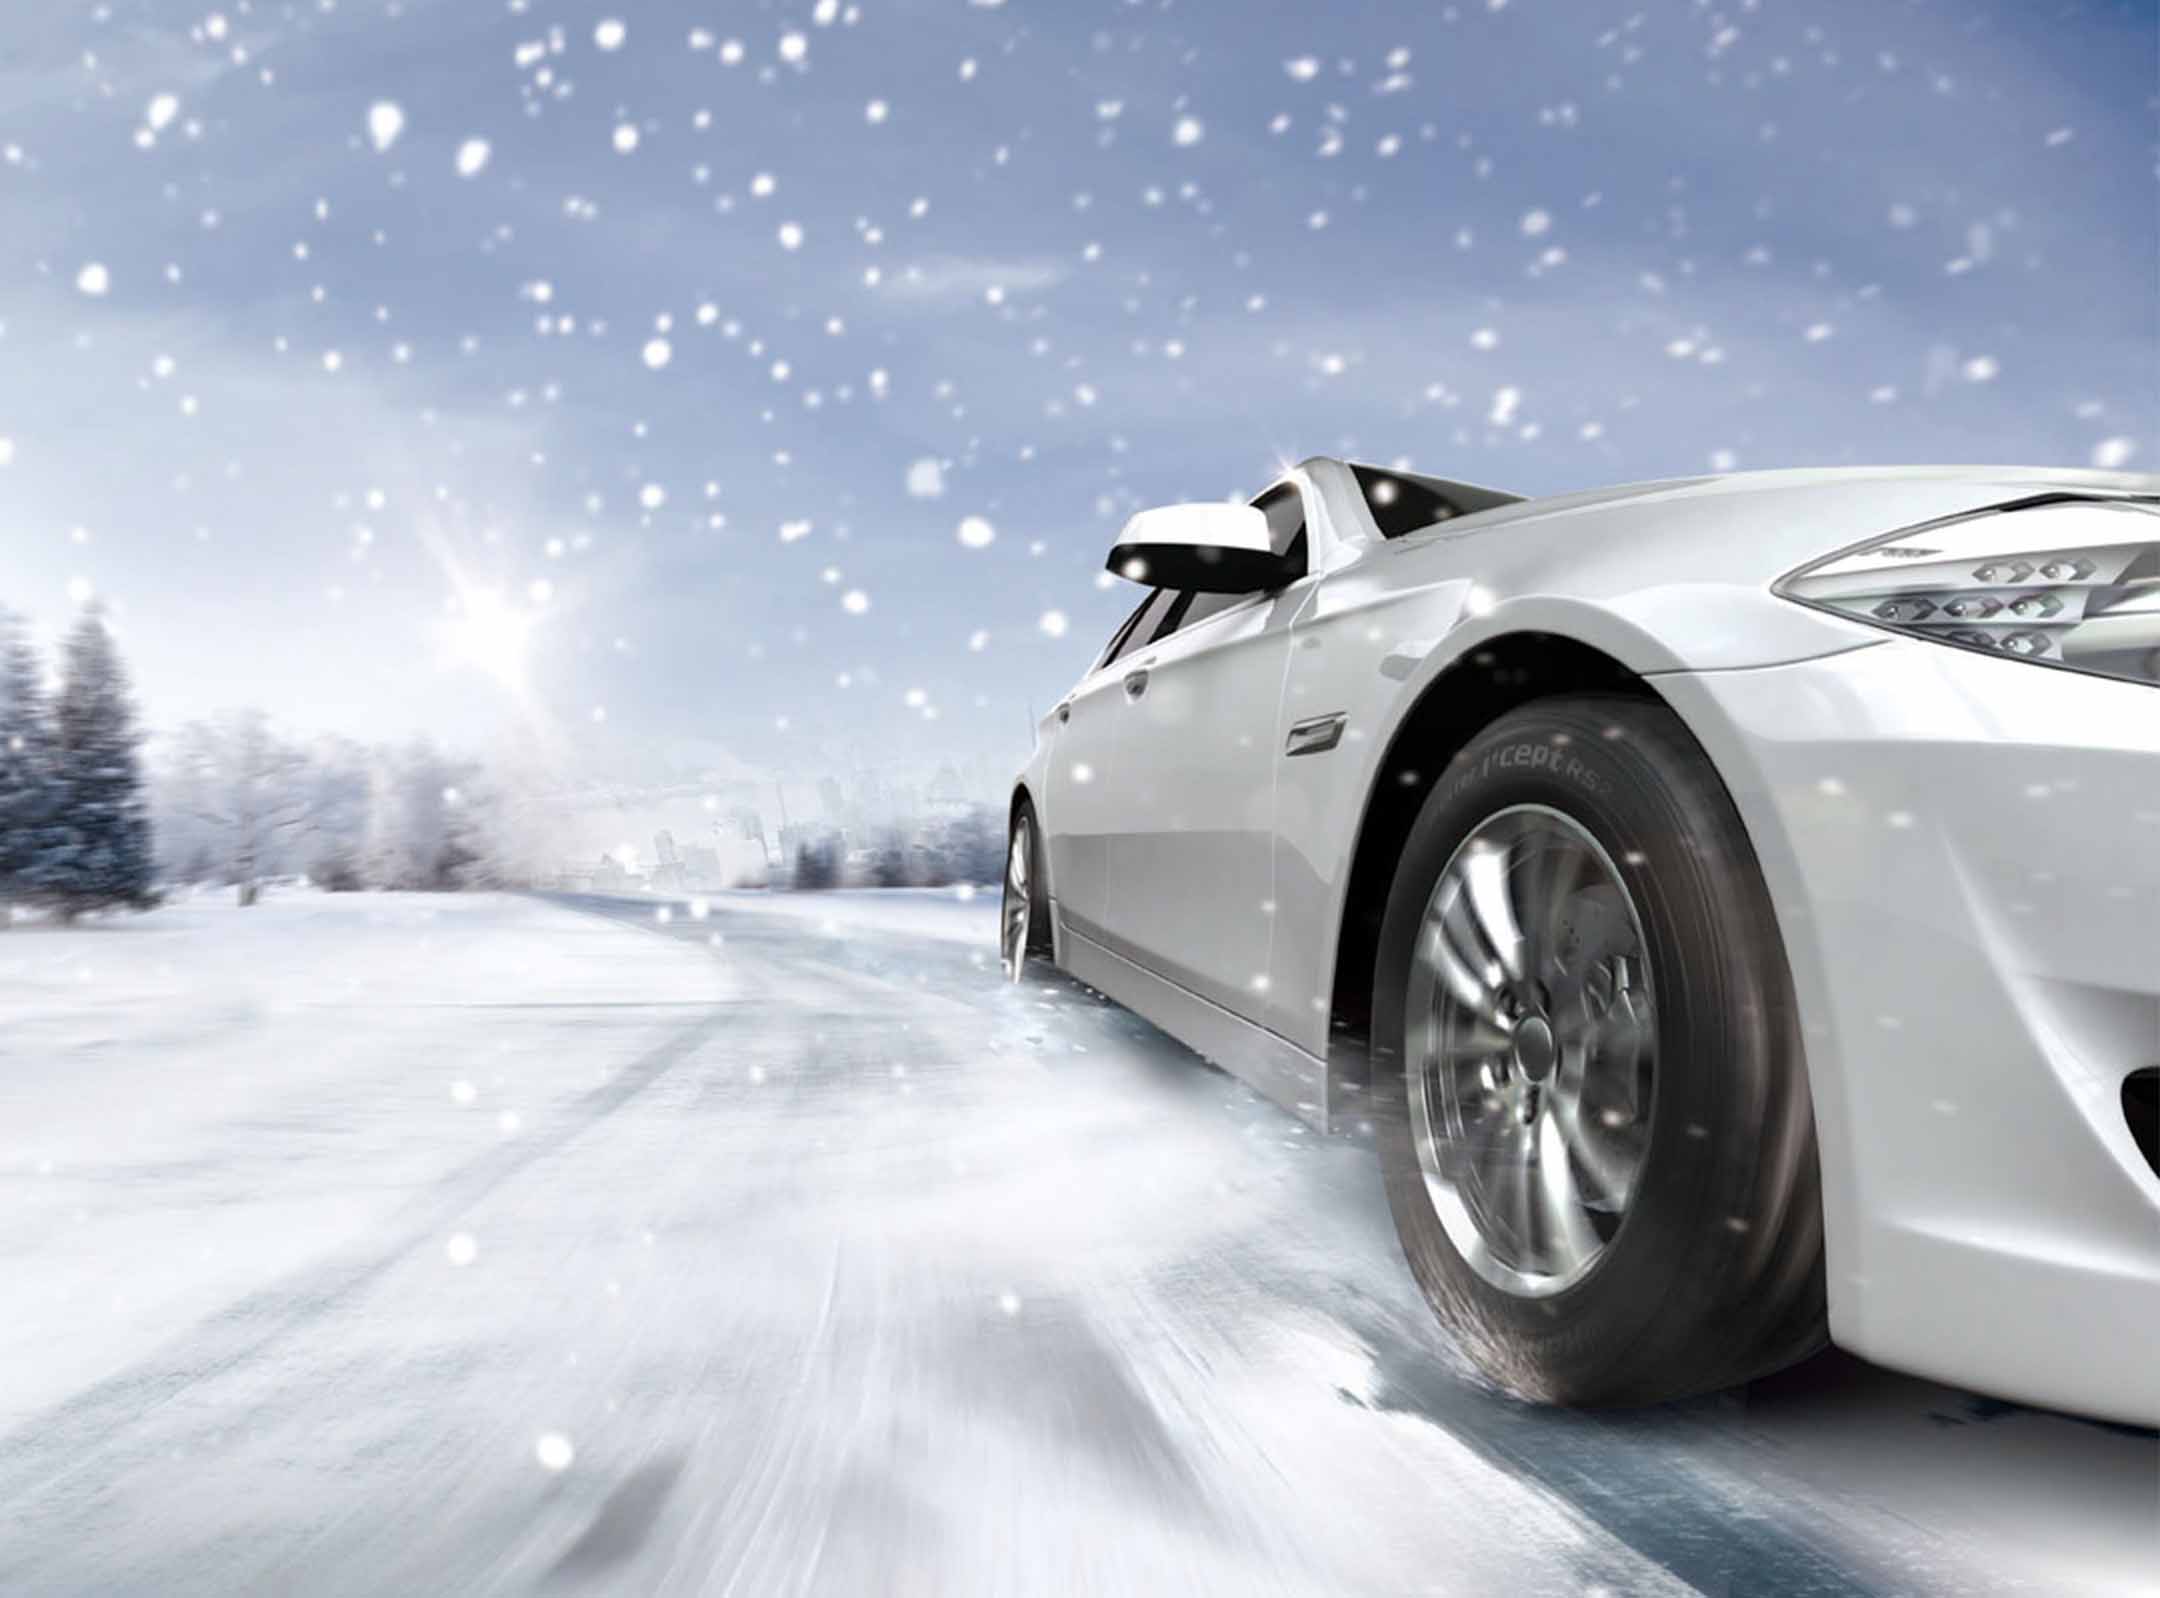 Winter i*cept i*cept Tire W452 Hankook | Deutschland Winter RS2 